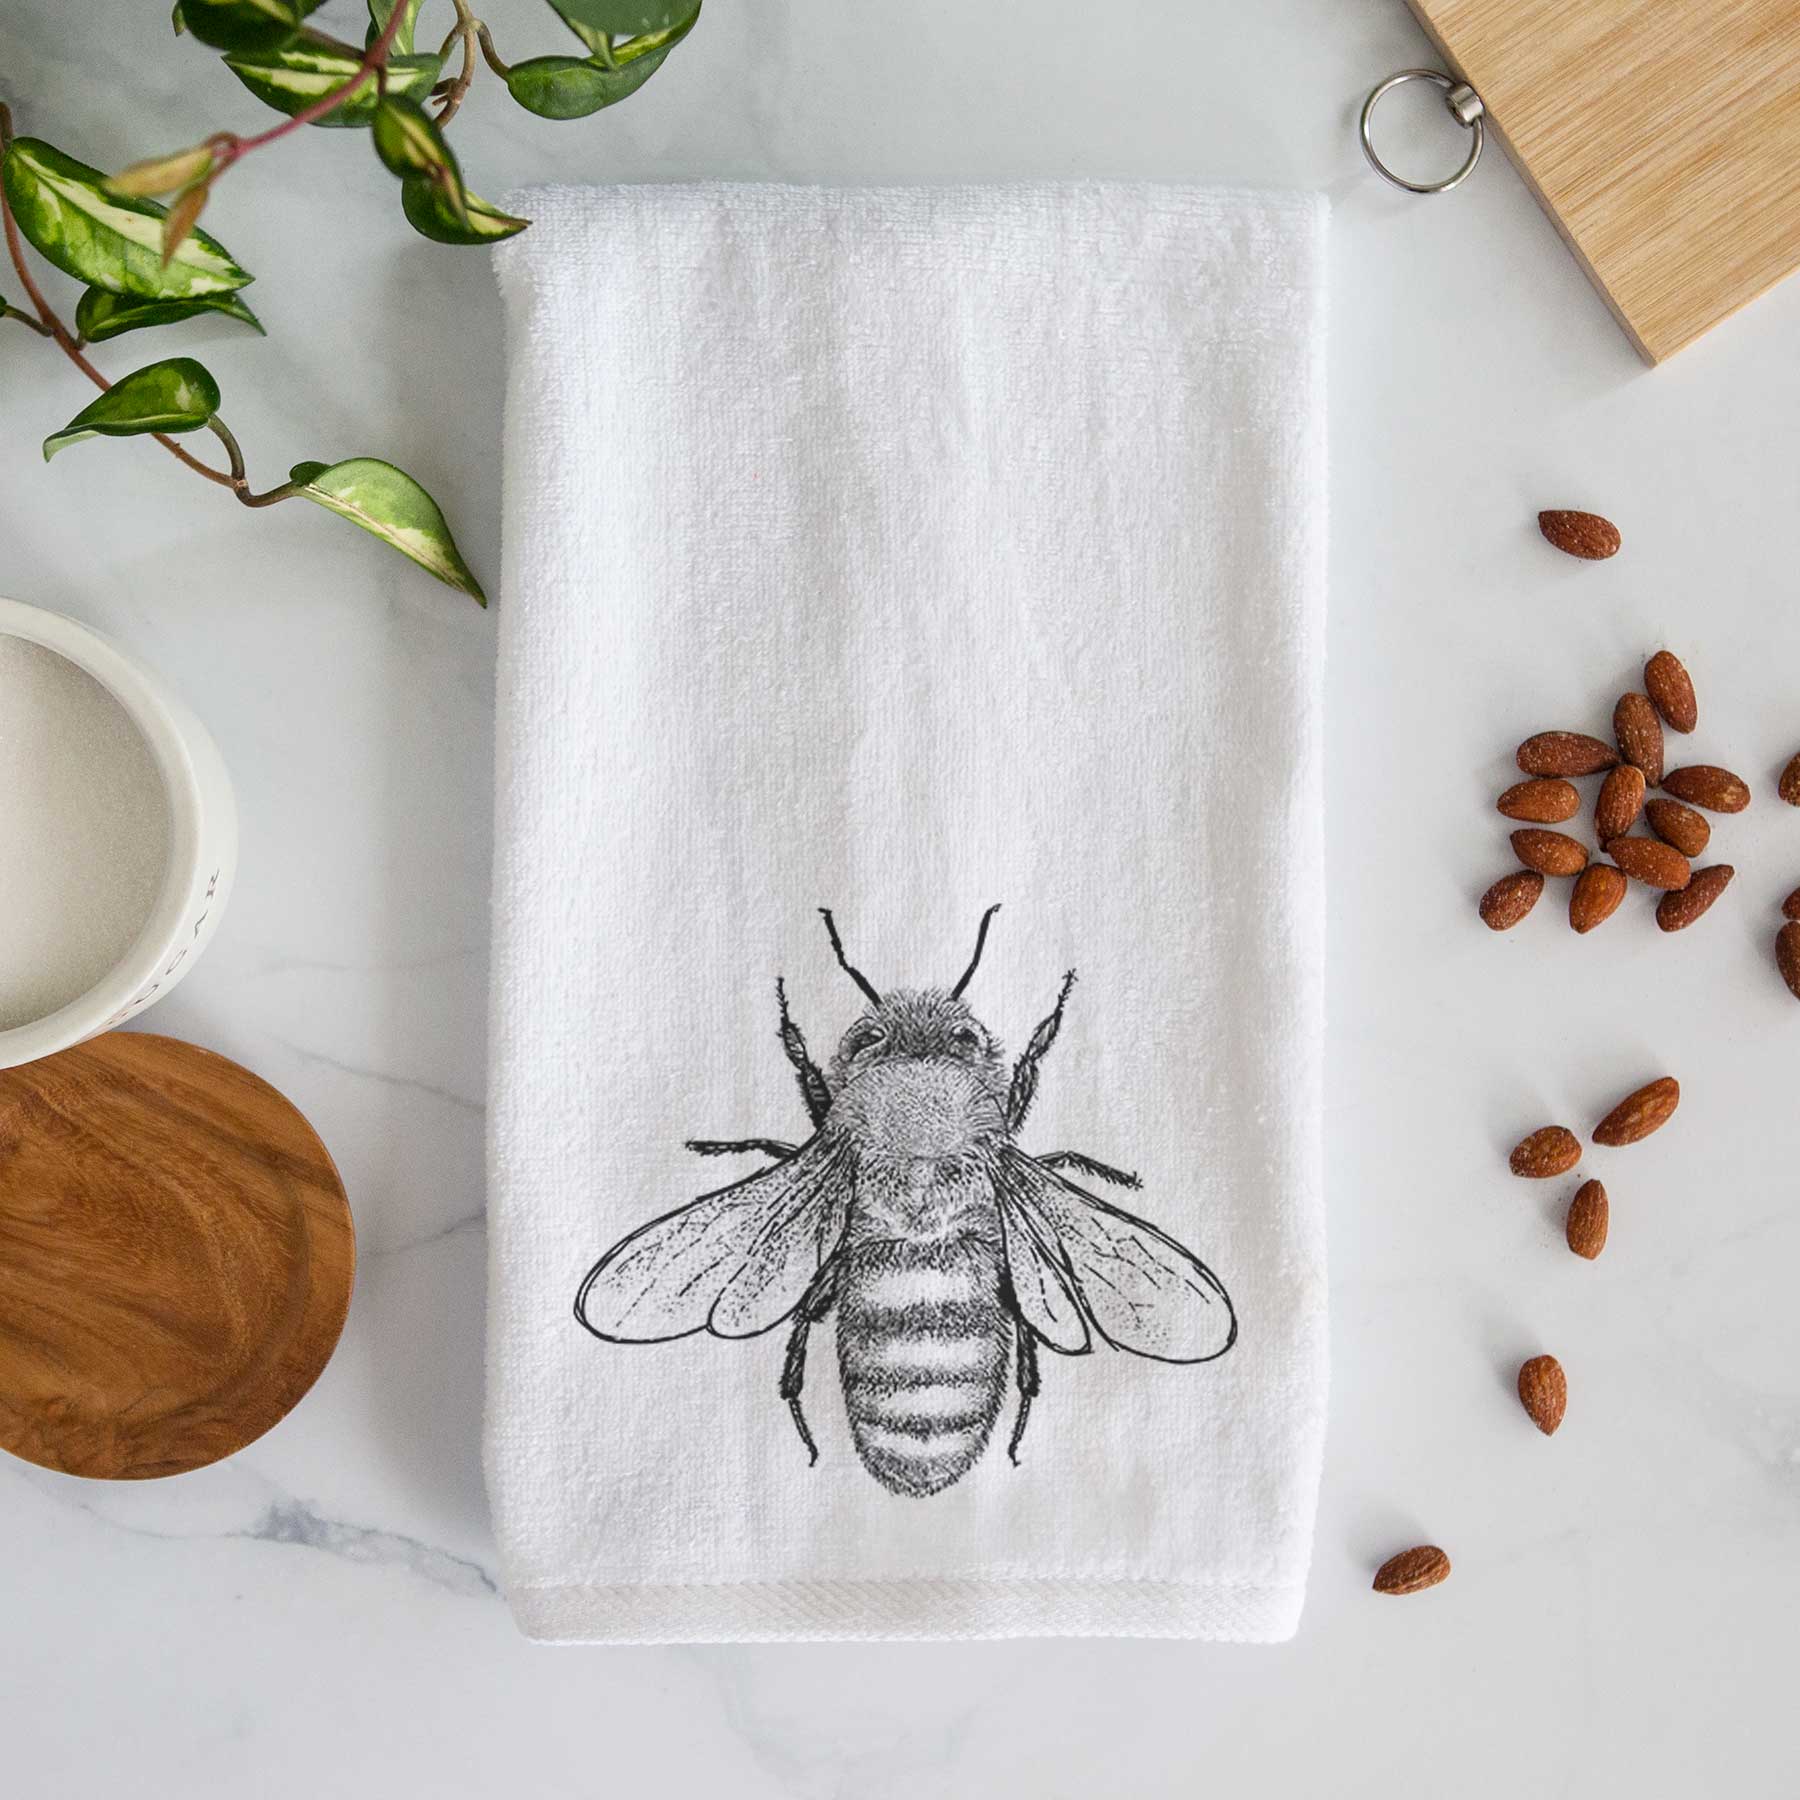 Honey Bee Tea Towel Kitchen Towel -   Bee decor, Printed tea towel,  Honey bee